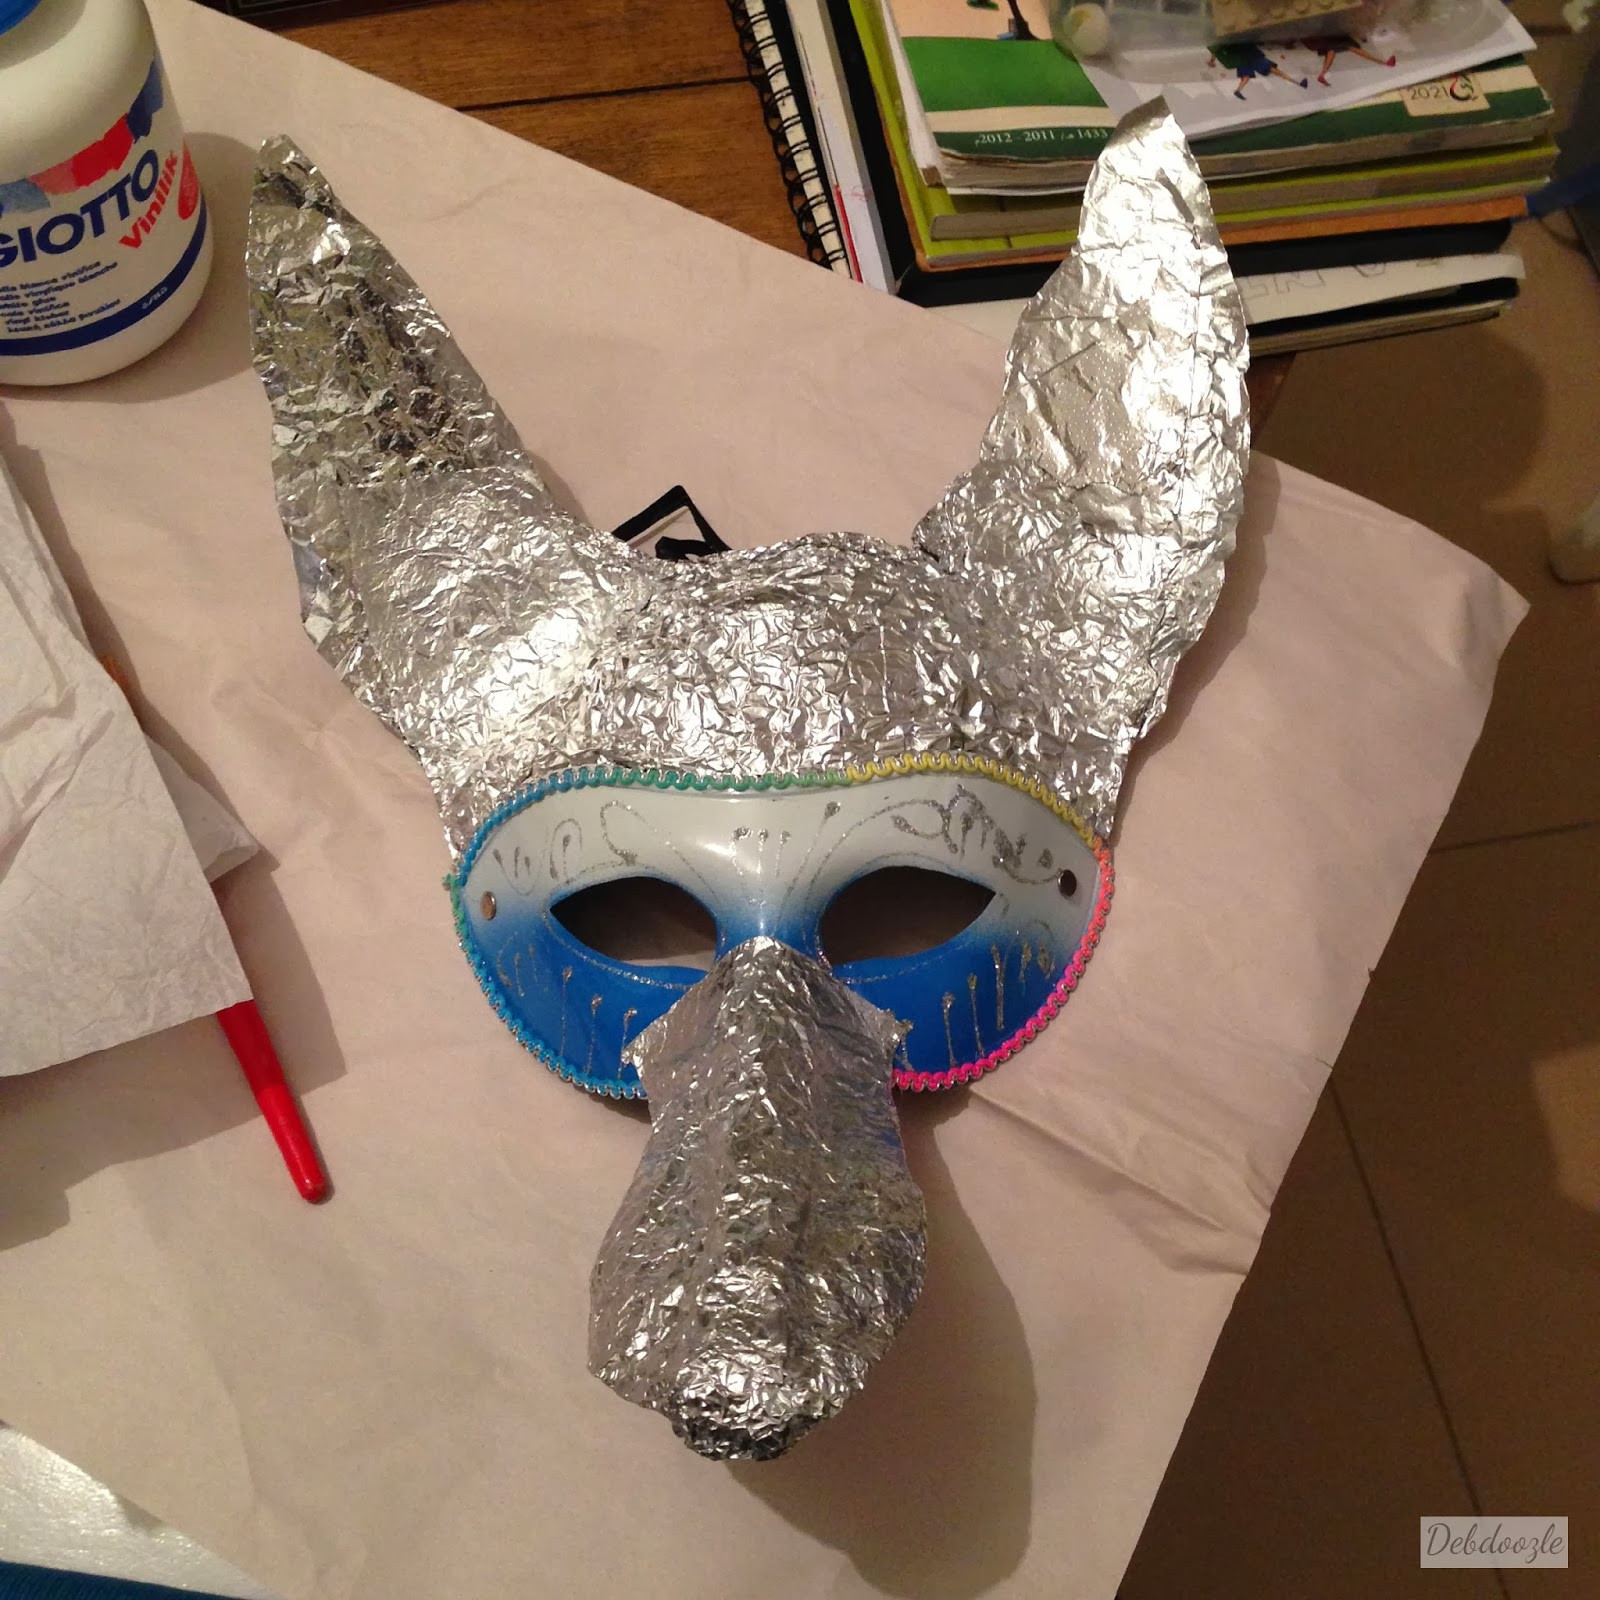 Best ideas about DIY Paper Mache Masks
. Save or Pin Debdoozle DIY Papier Mâché Paper Mache Anubis Jackal Mask Now.